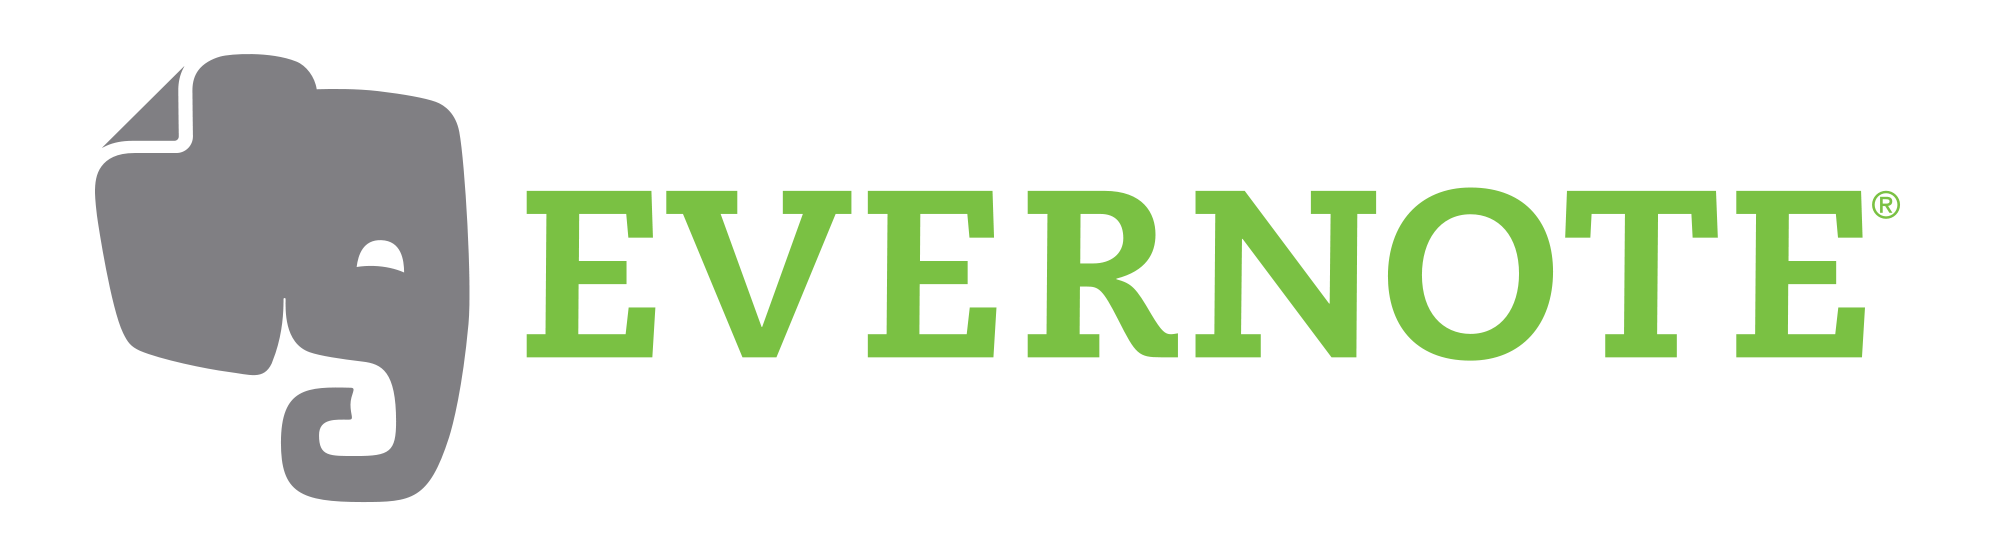 logo-color_evernote